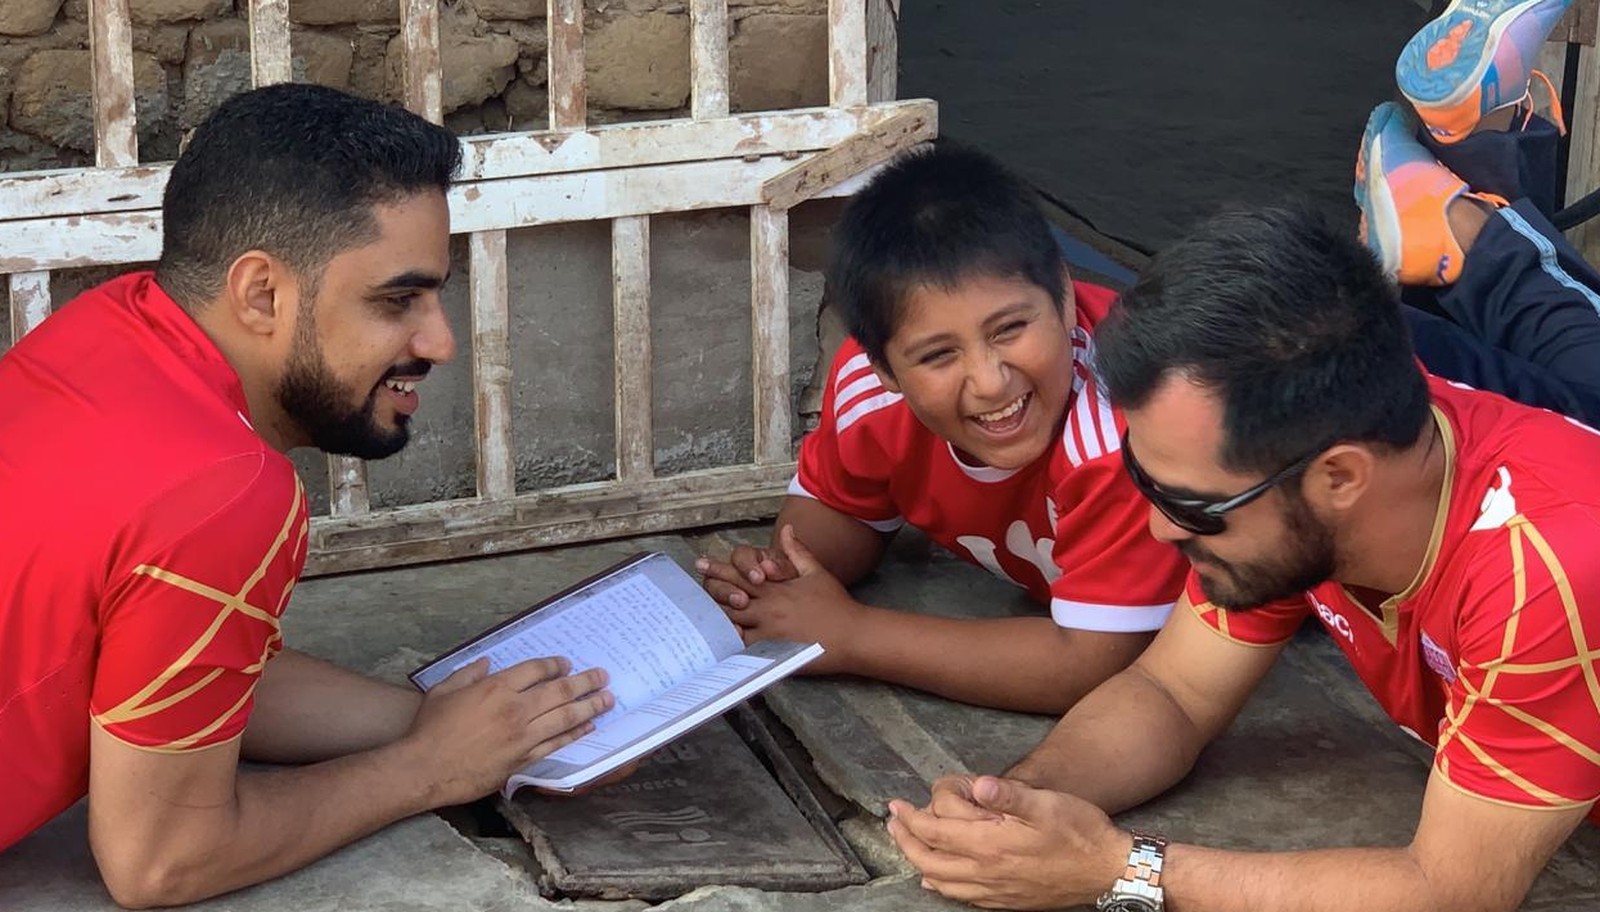 Milionário árabe constrói casa nova para garoto peruano que estuda na rua porque não há luz onde mora